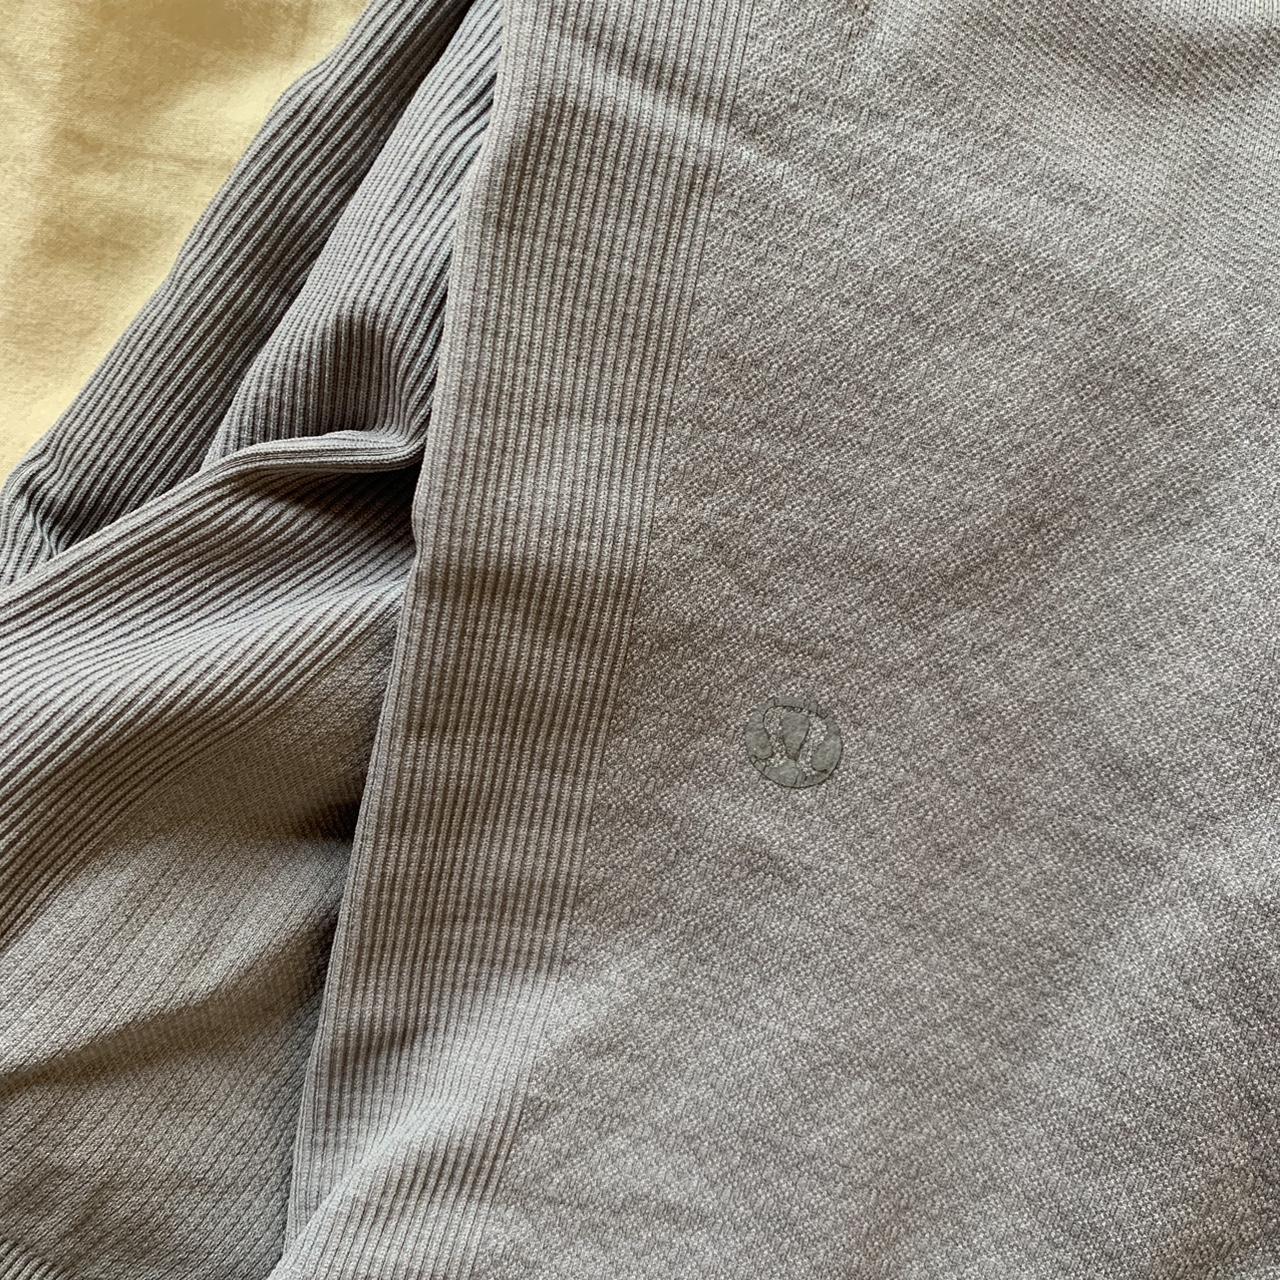 Gray cropped lulu lemon leggings, so comfy and - Depop